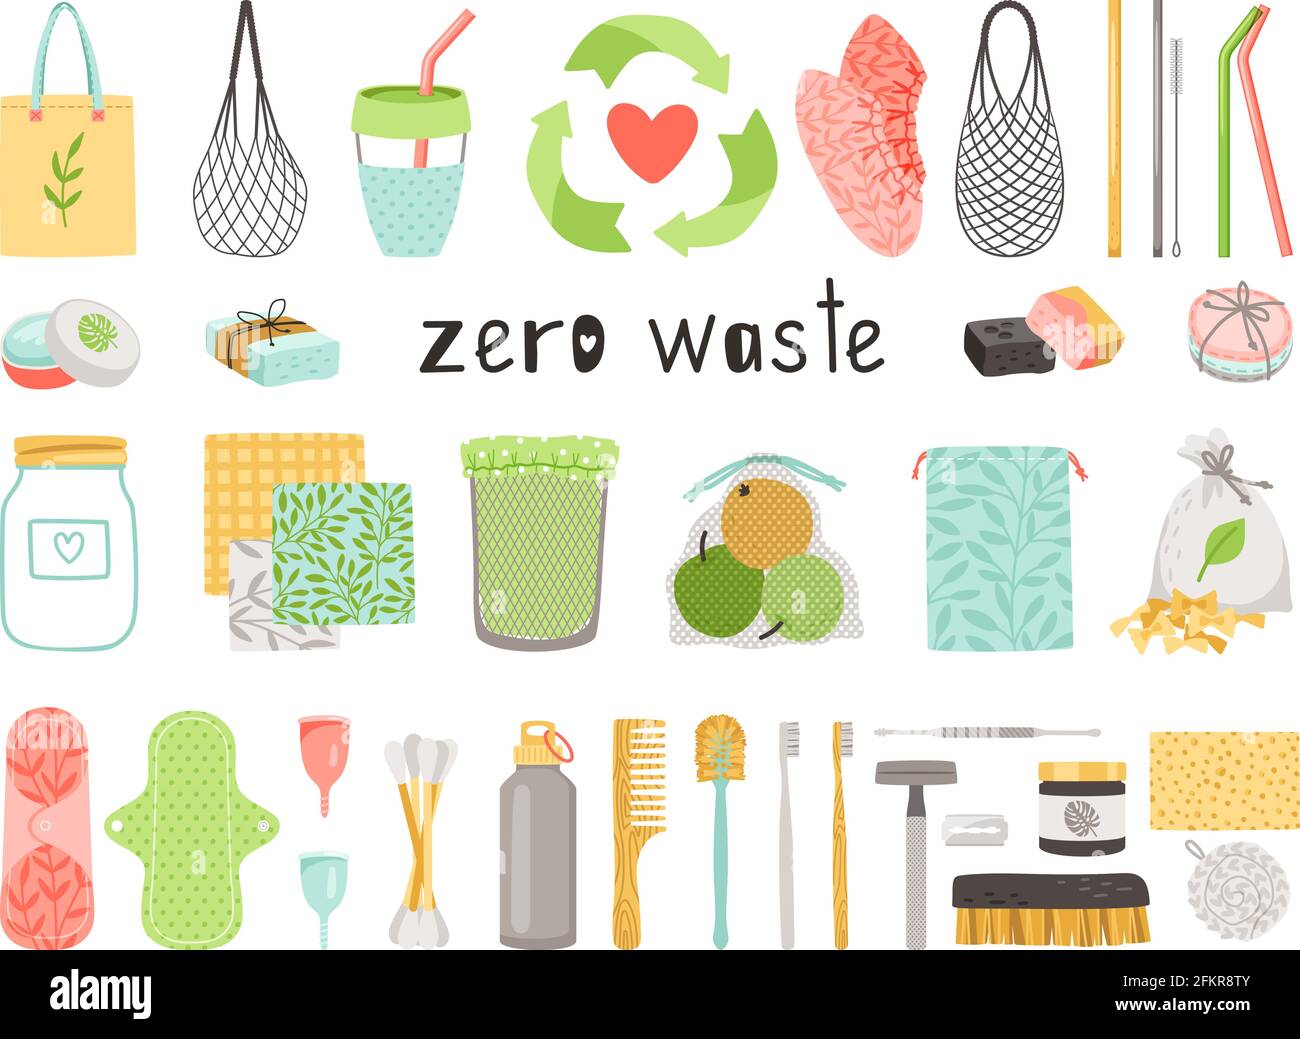 Cero residuos. Dibujos animados Elementos ecológicos naturales duraderos y  reutilizables para reducir los residuos de plástico, bolsa de lino y  cepillo de dientes de madera en la colección de objetos ecológicos aislados